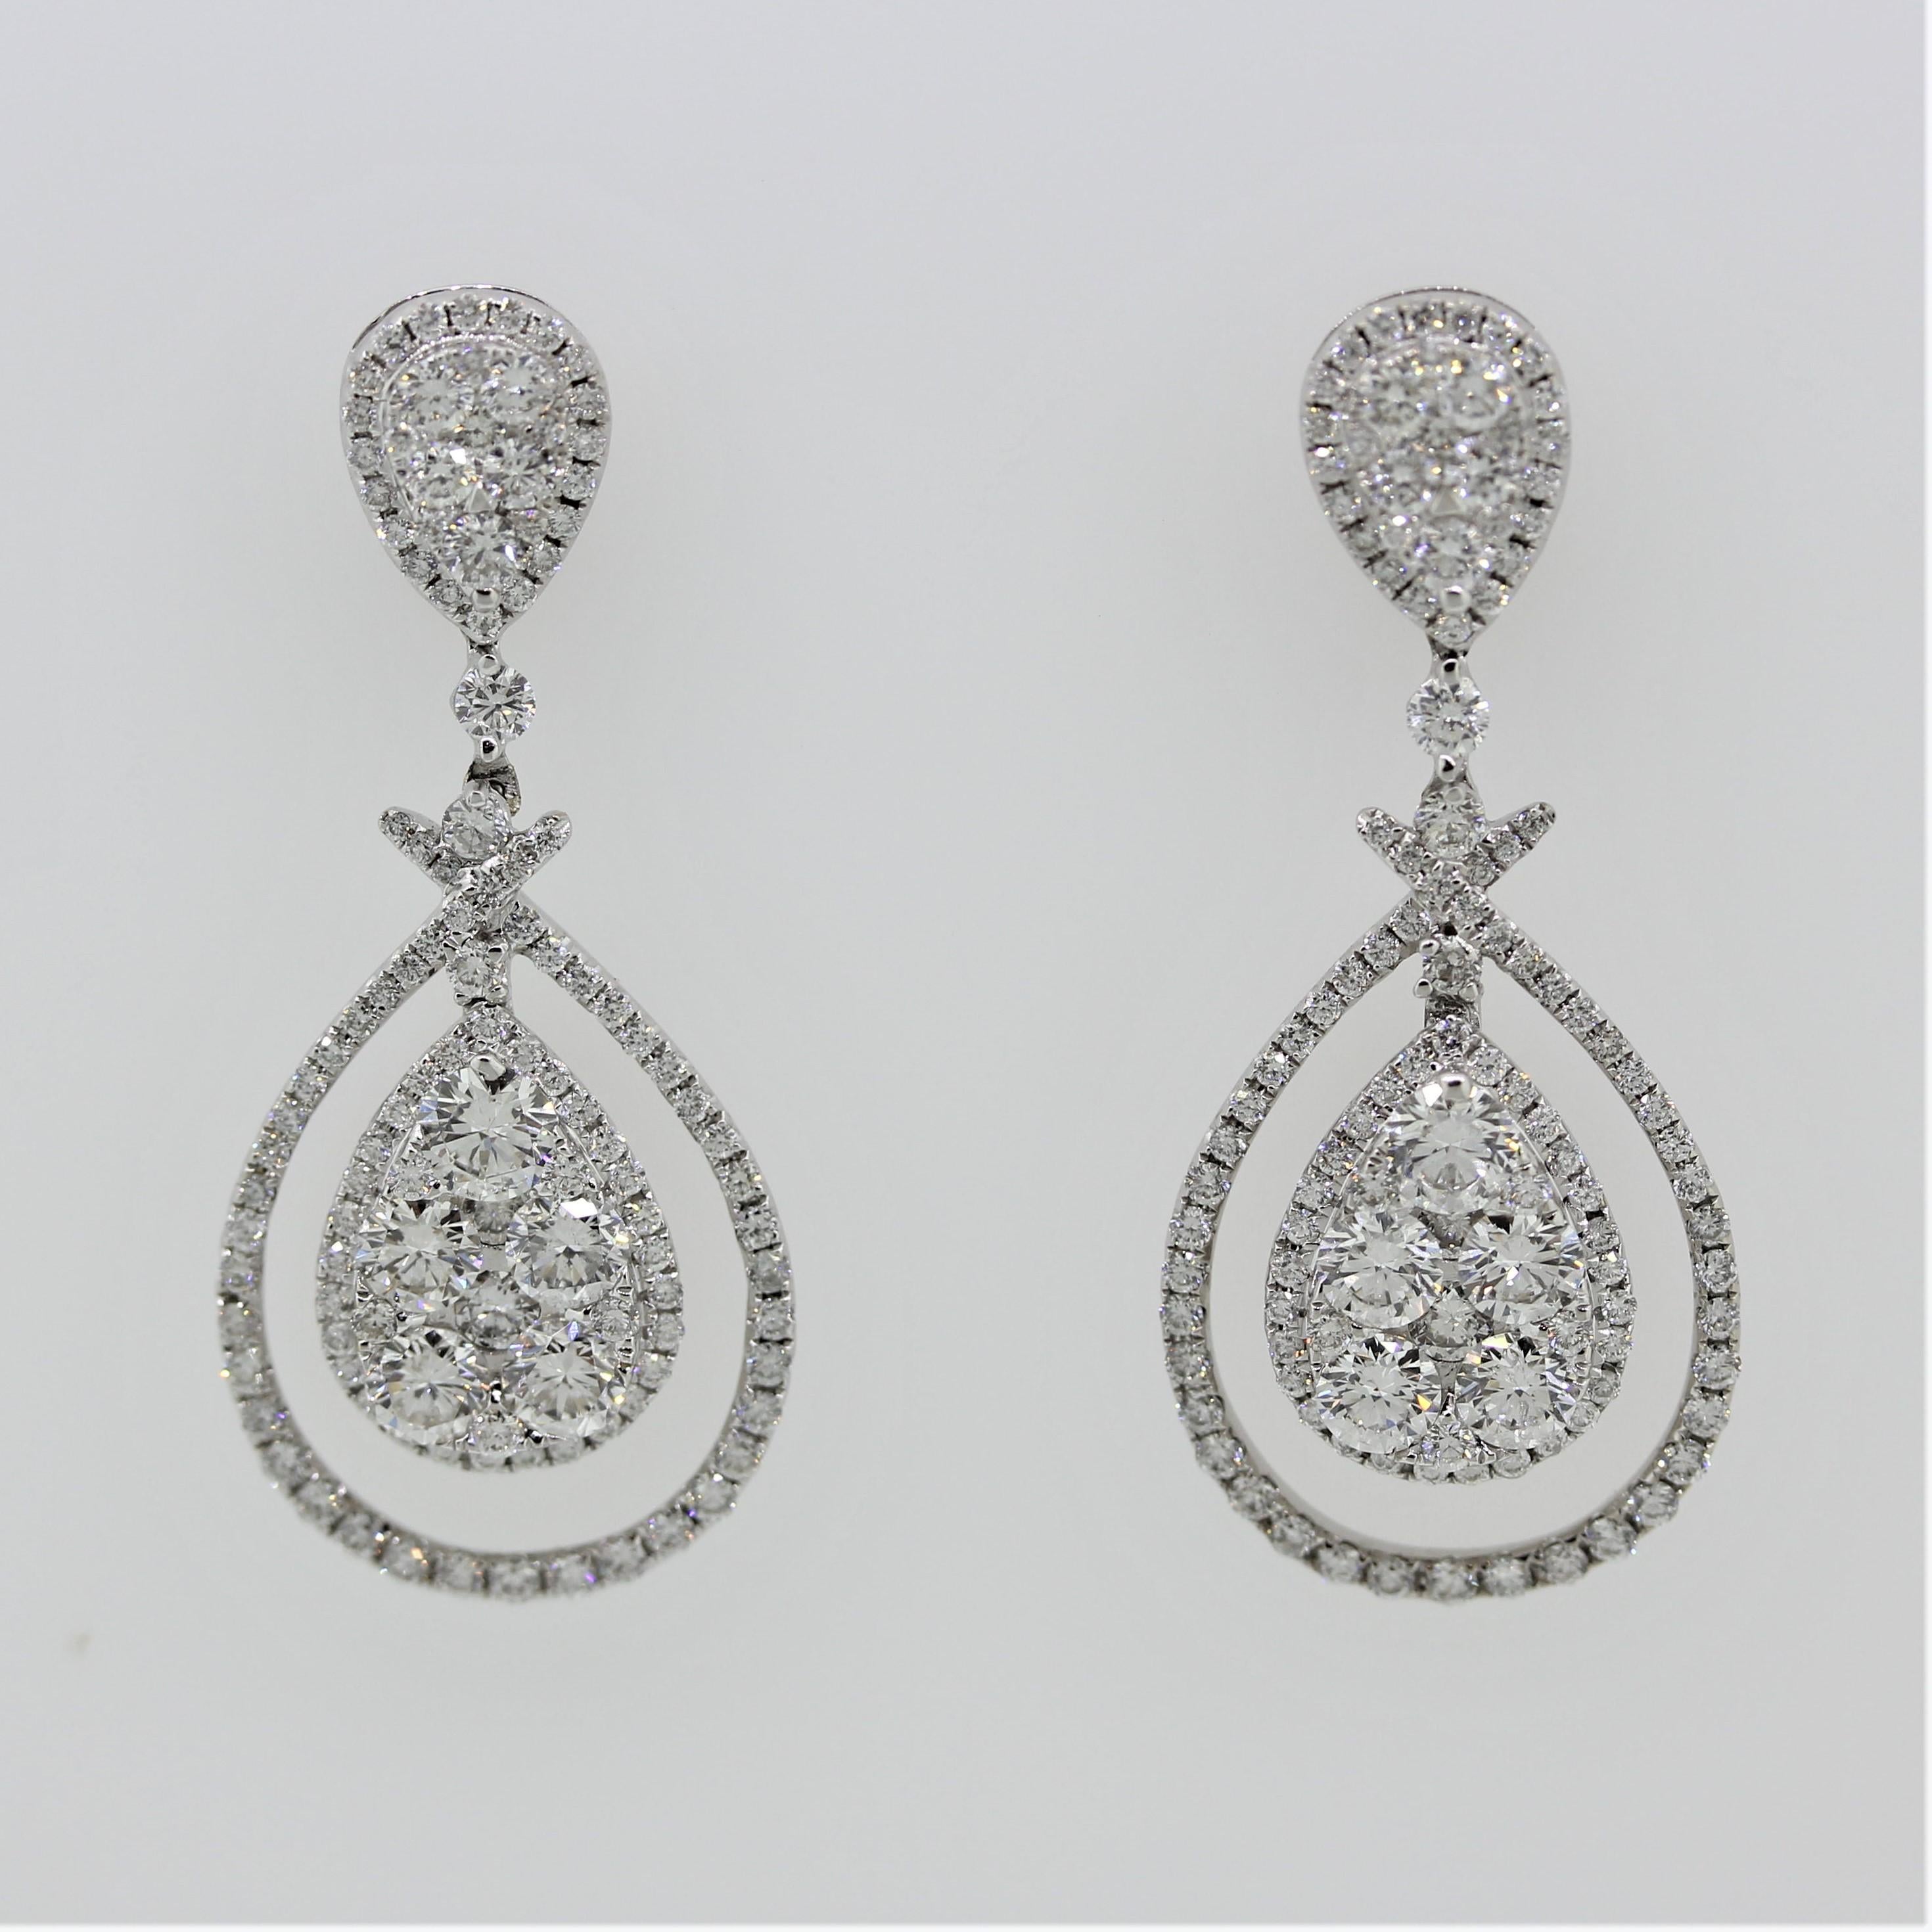 Ein besonderes Paar Ohrringe mit insgesamt 3,45 Karat runden Diamanten im Brillantschliff. Sie sind sowohl am Rand der Ohrringe als auch in birnenförmigen Clustern gefasst, die in der Mitte des Ohrrings baumeln. Hergestellt aus 14k Weißgold und